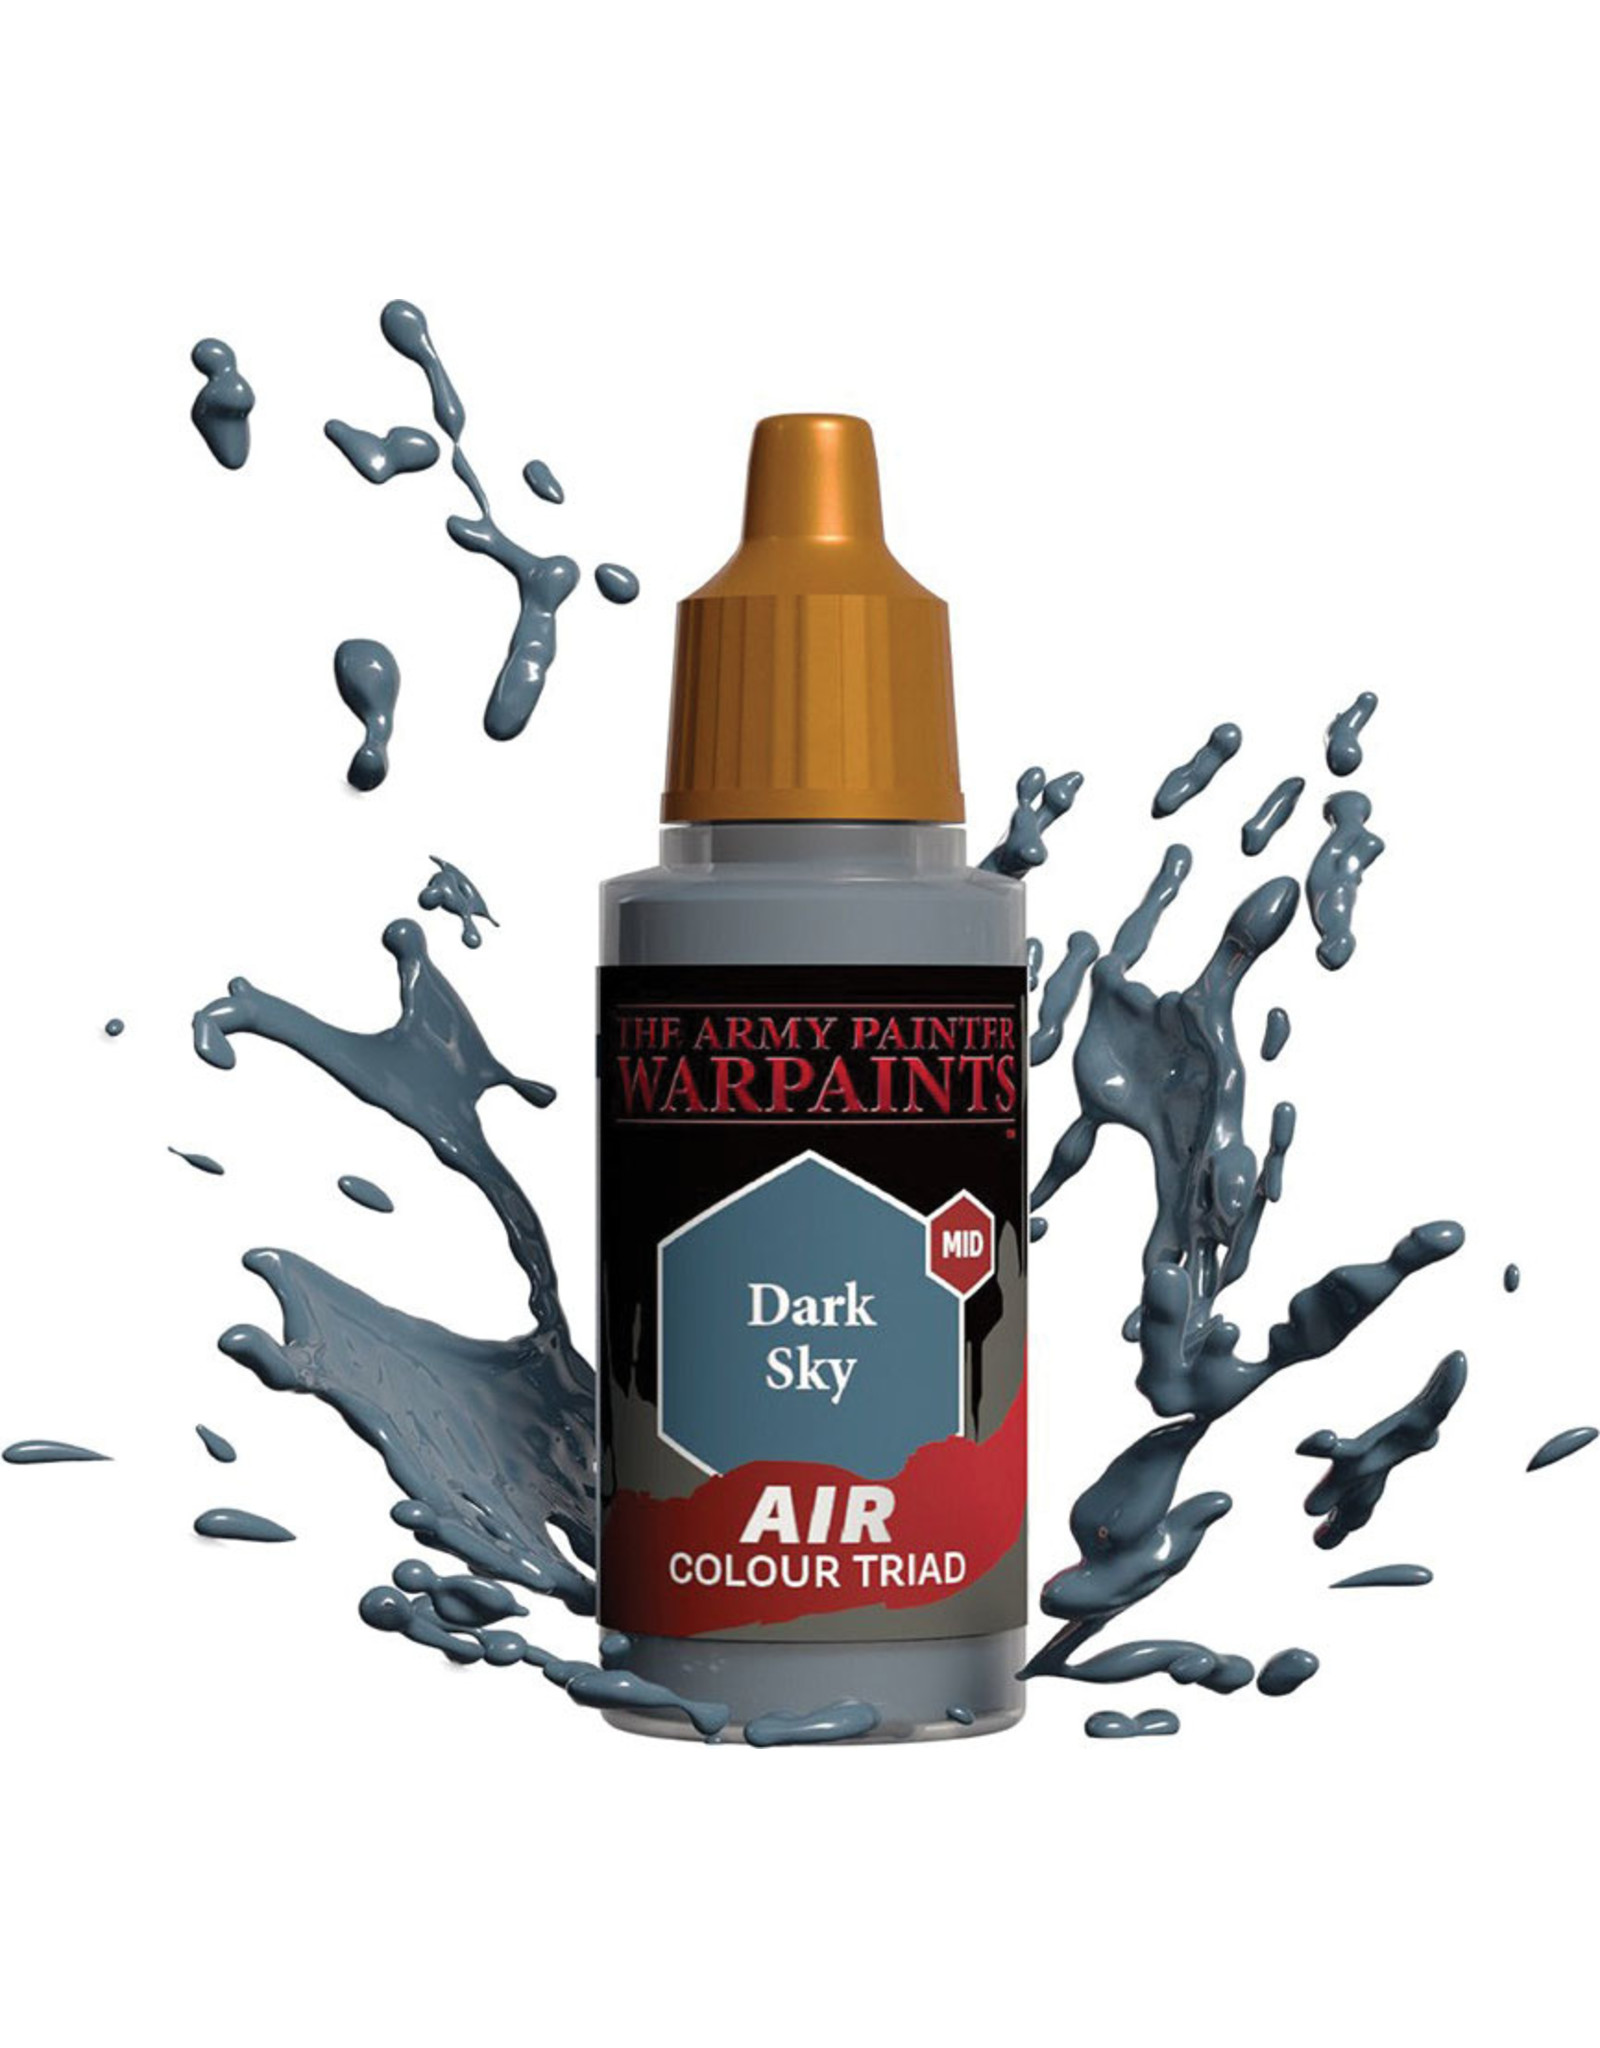 Army Painter Warpaint Air: Dark Sky, 18ml.